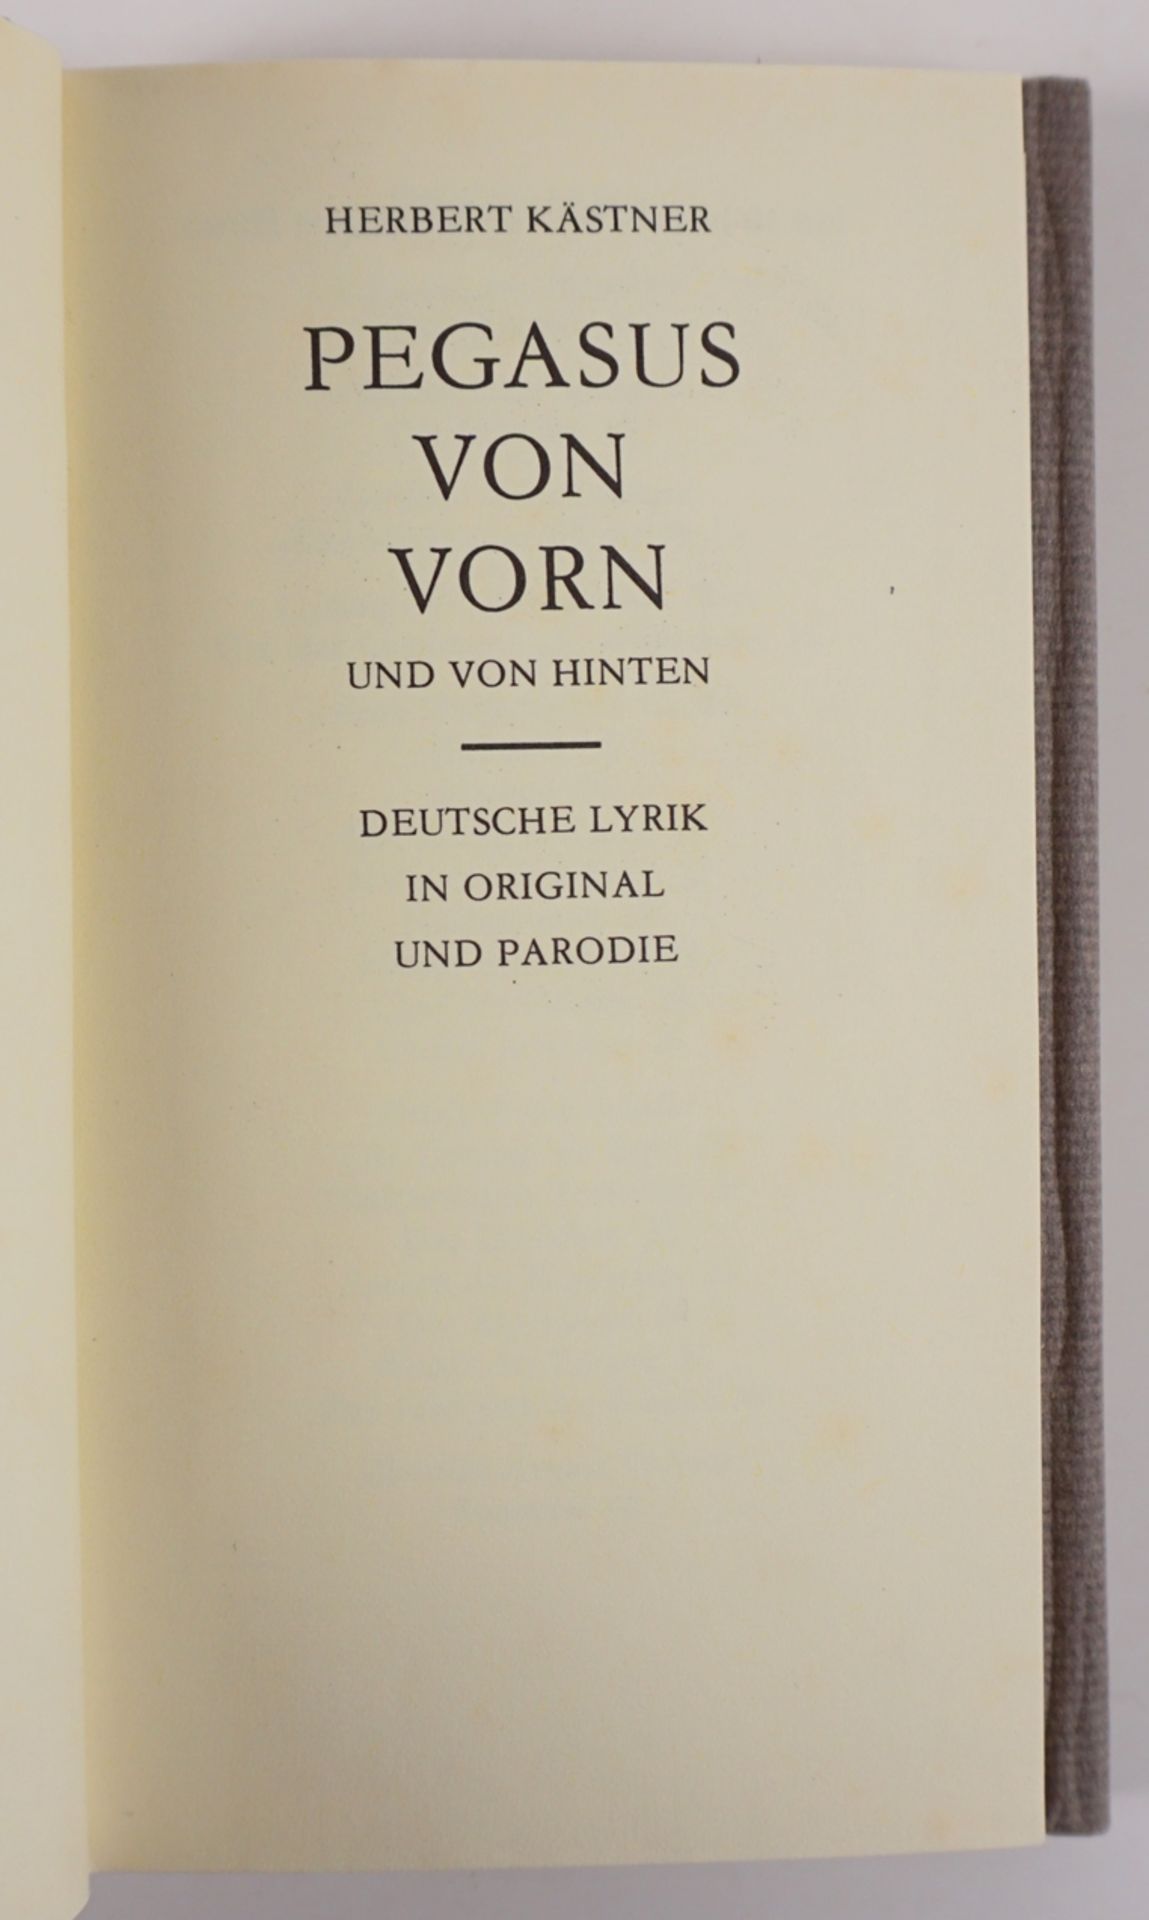 Pegasus von vorn und von hinten, Herbert Kästner, Holzstiche von Karl-Georg Hirsch, 1983, Vorzugsa - Image 2 of 4